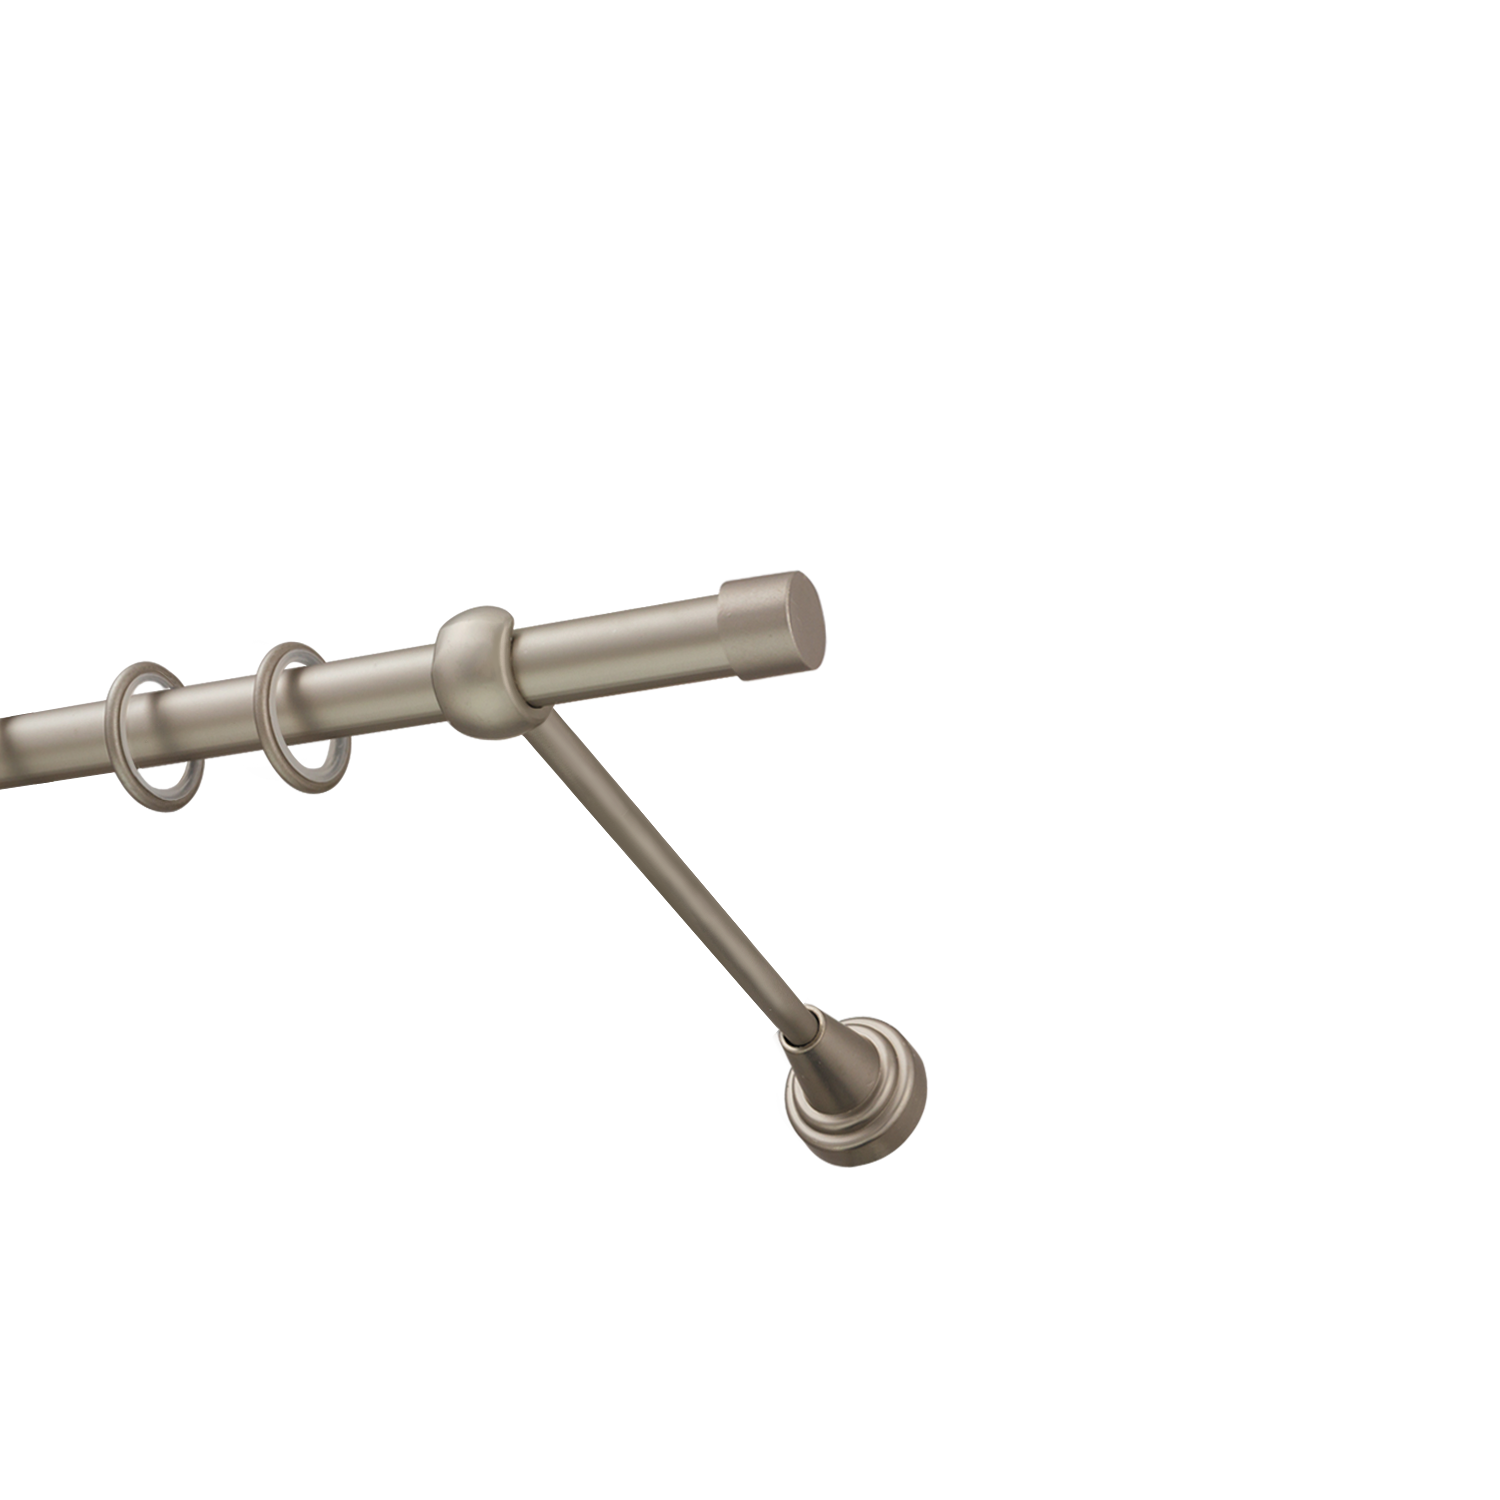 Металлический карниз для штор Заглушка, однорядный 16 мм, сталь, гладкая штанга, длина 180 см - фото Wikidecor.ru